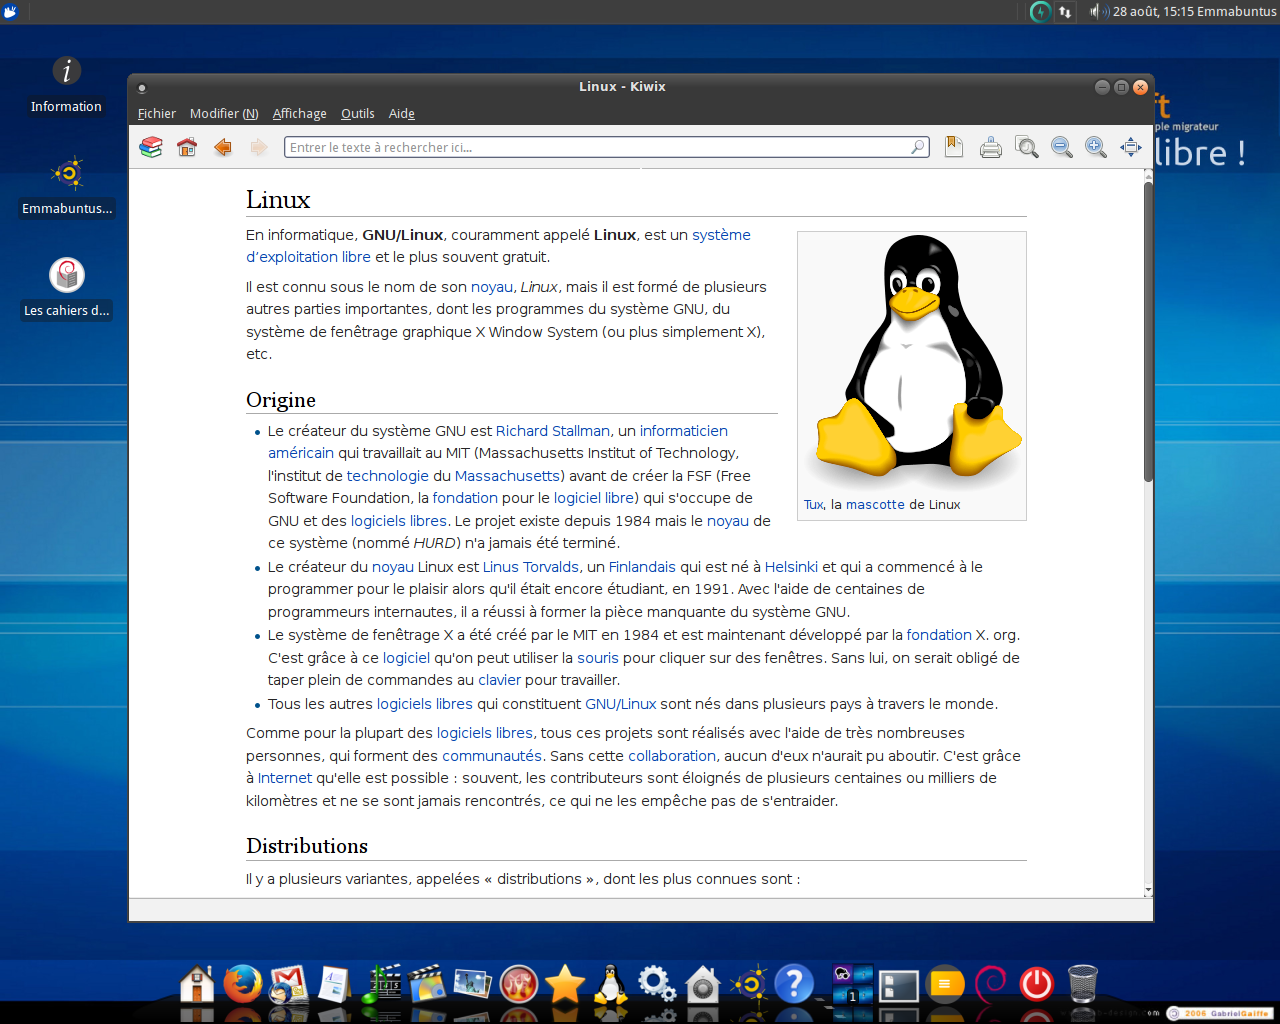 В статье дается инструкция по подключению ZIM-баз Википедии в программе-ридере Kiwix, предназначенной для чтения статей Википедии в оффлайн-режиме